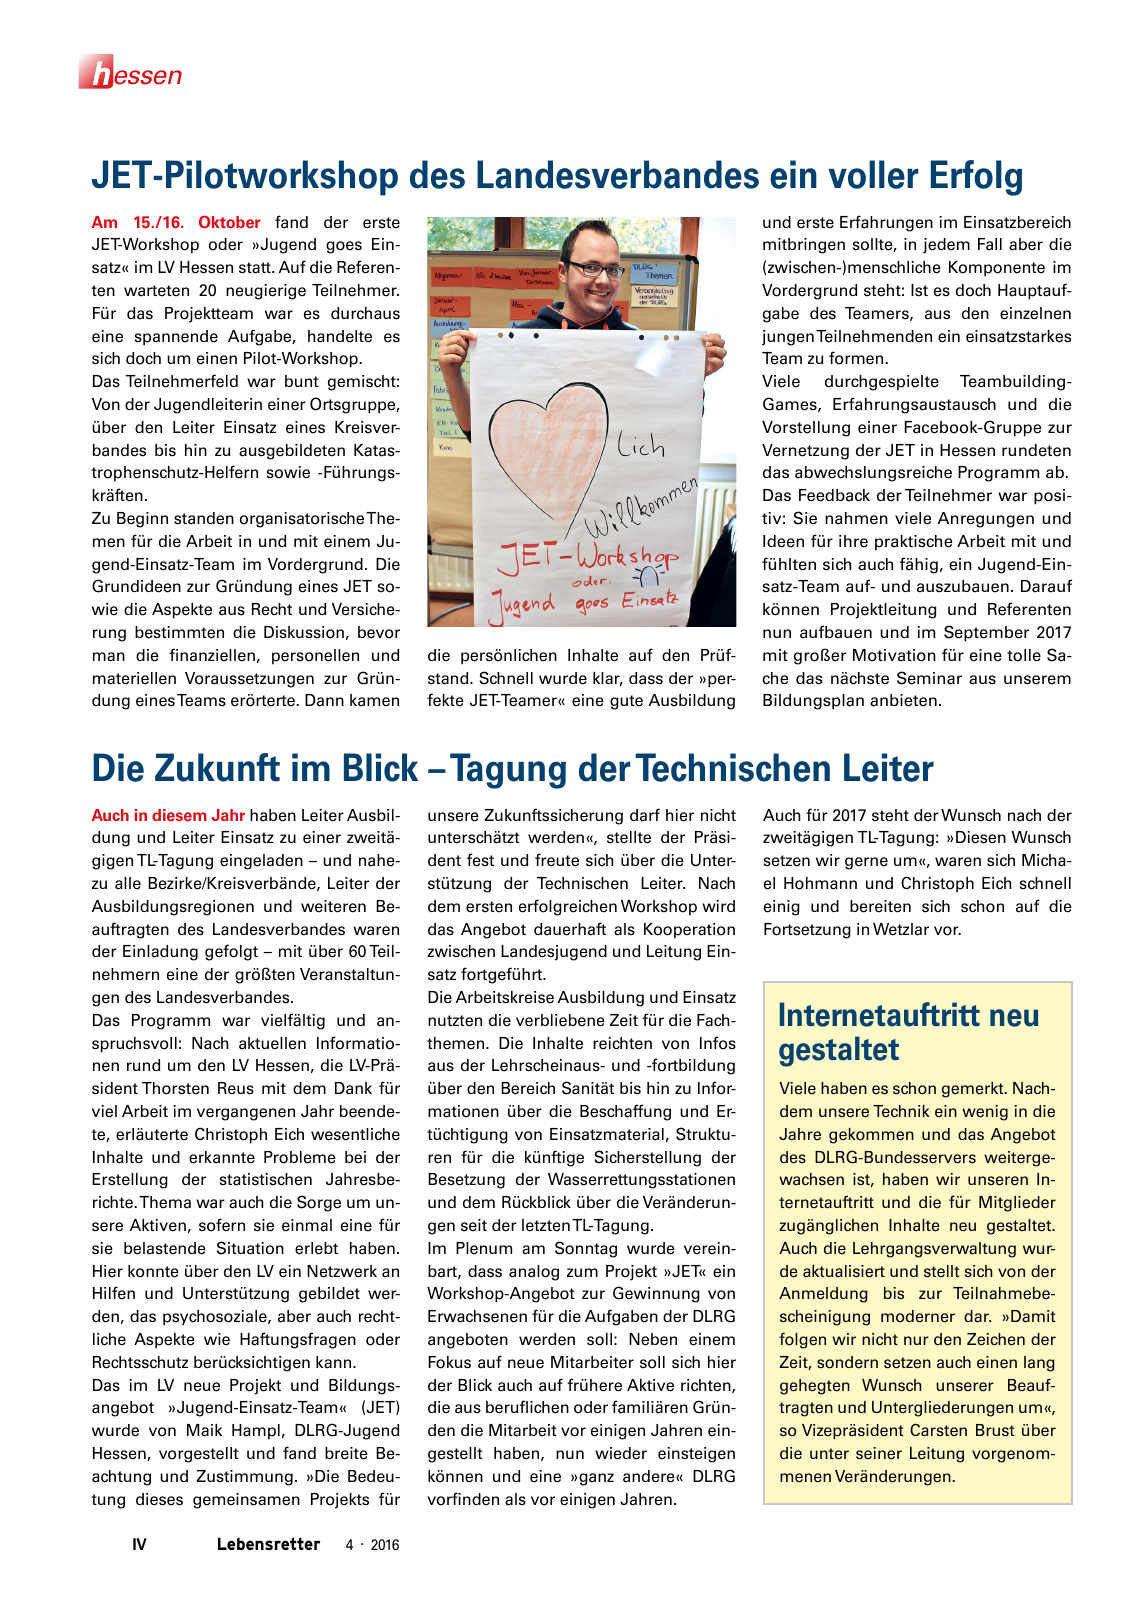 Vorschau Lebensretter 4/2016 - Regionalausgabe Hessen Seite 6